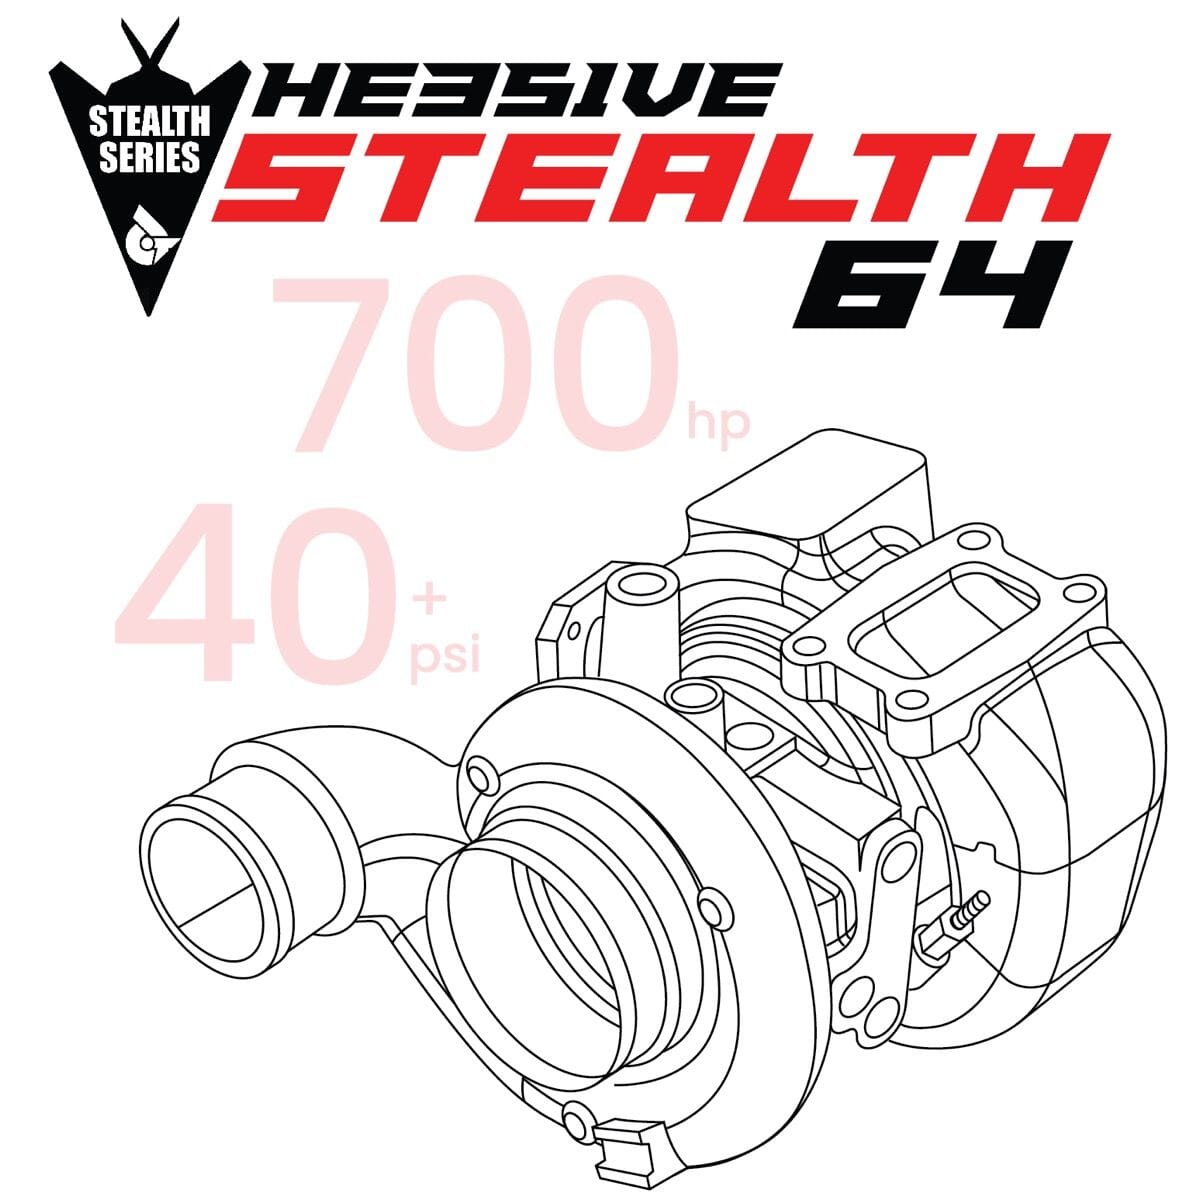 HE351VE Stealth Mach 1 64 Turbo (2007.5-2009 6.7L Cummins)